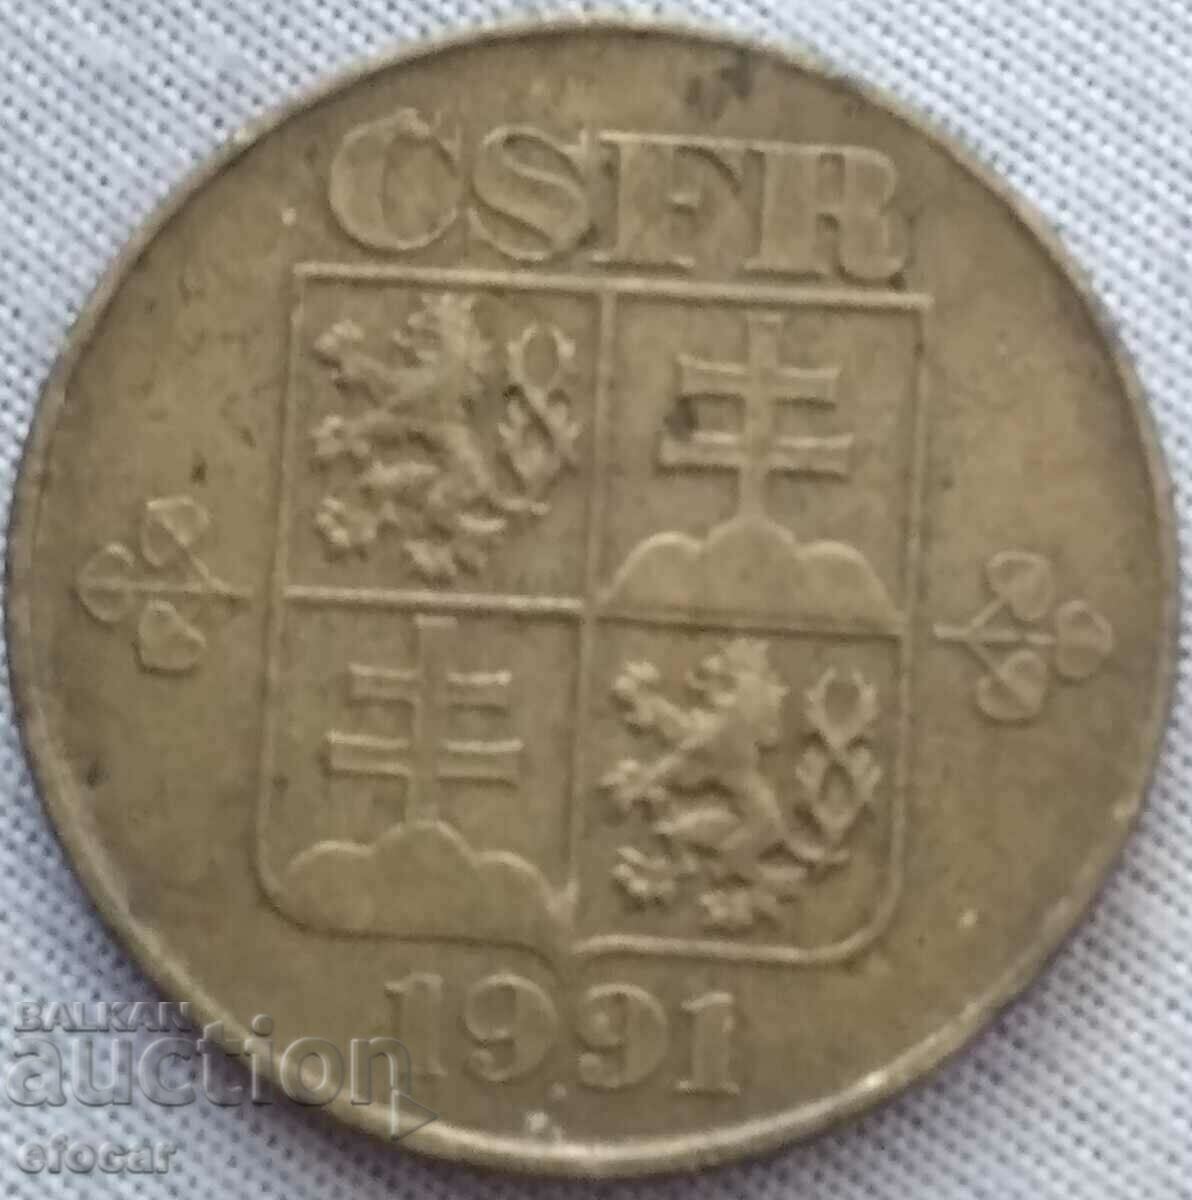 1 krona Czechoslovakia 1991